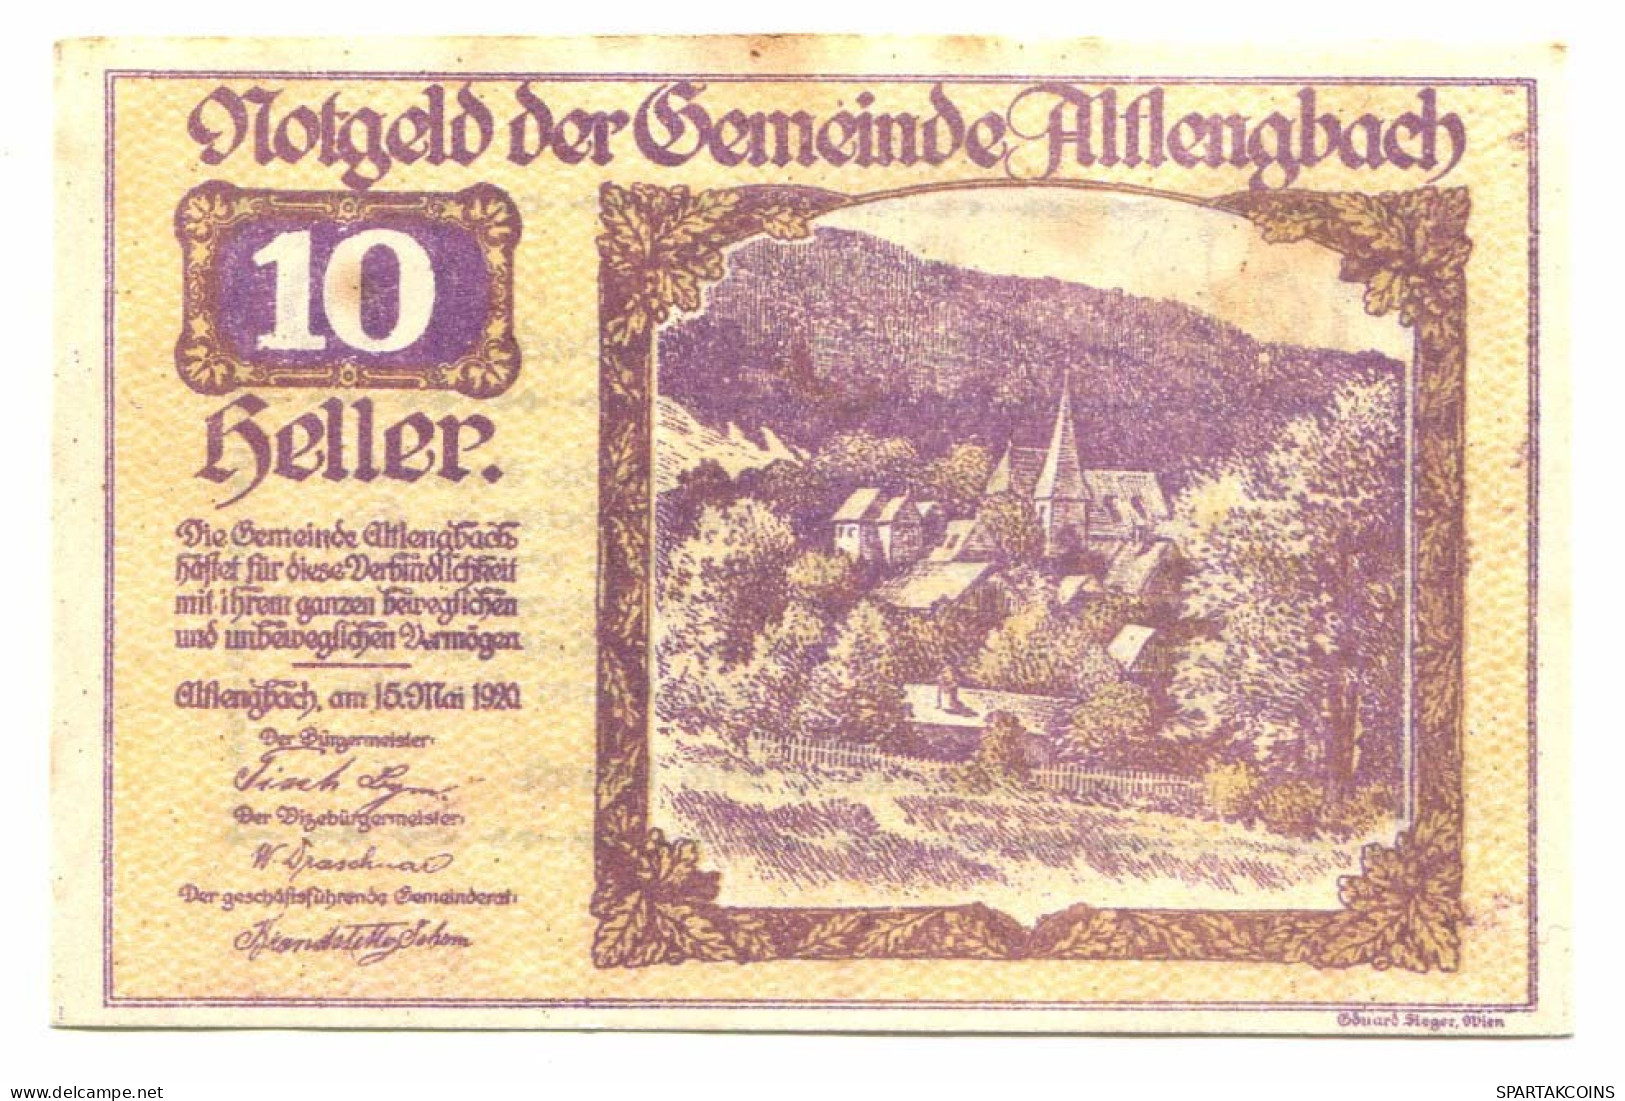 10 Heller 1920 ALTLENGBACH Österreich UNC Notgeld Papiergeld Banknote #P10475 - [11] Local Banknote Issues